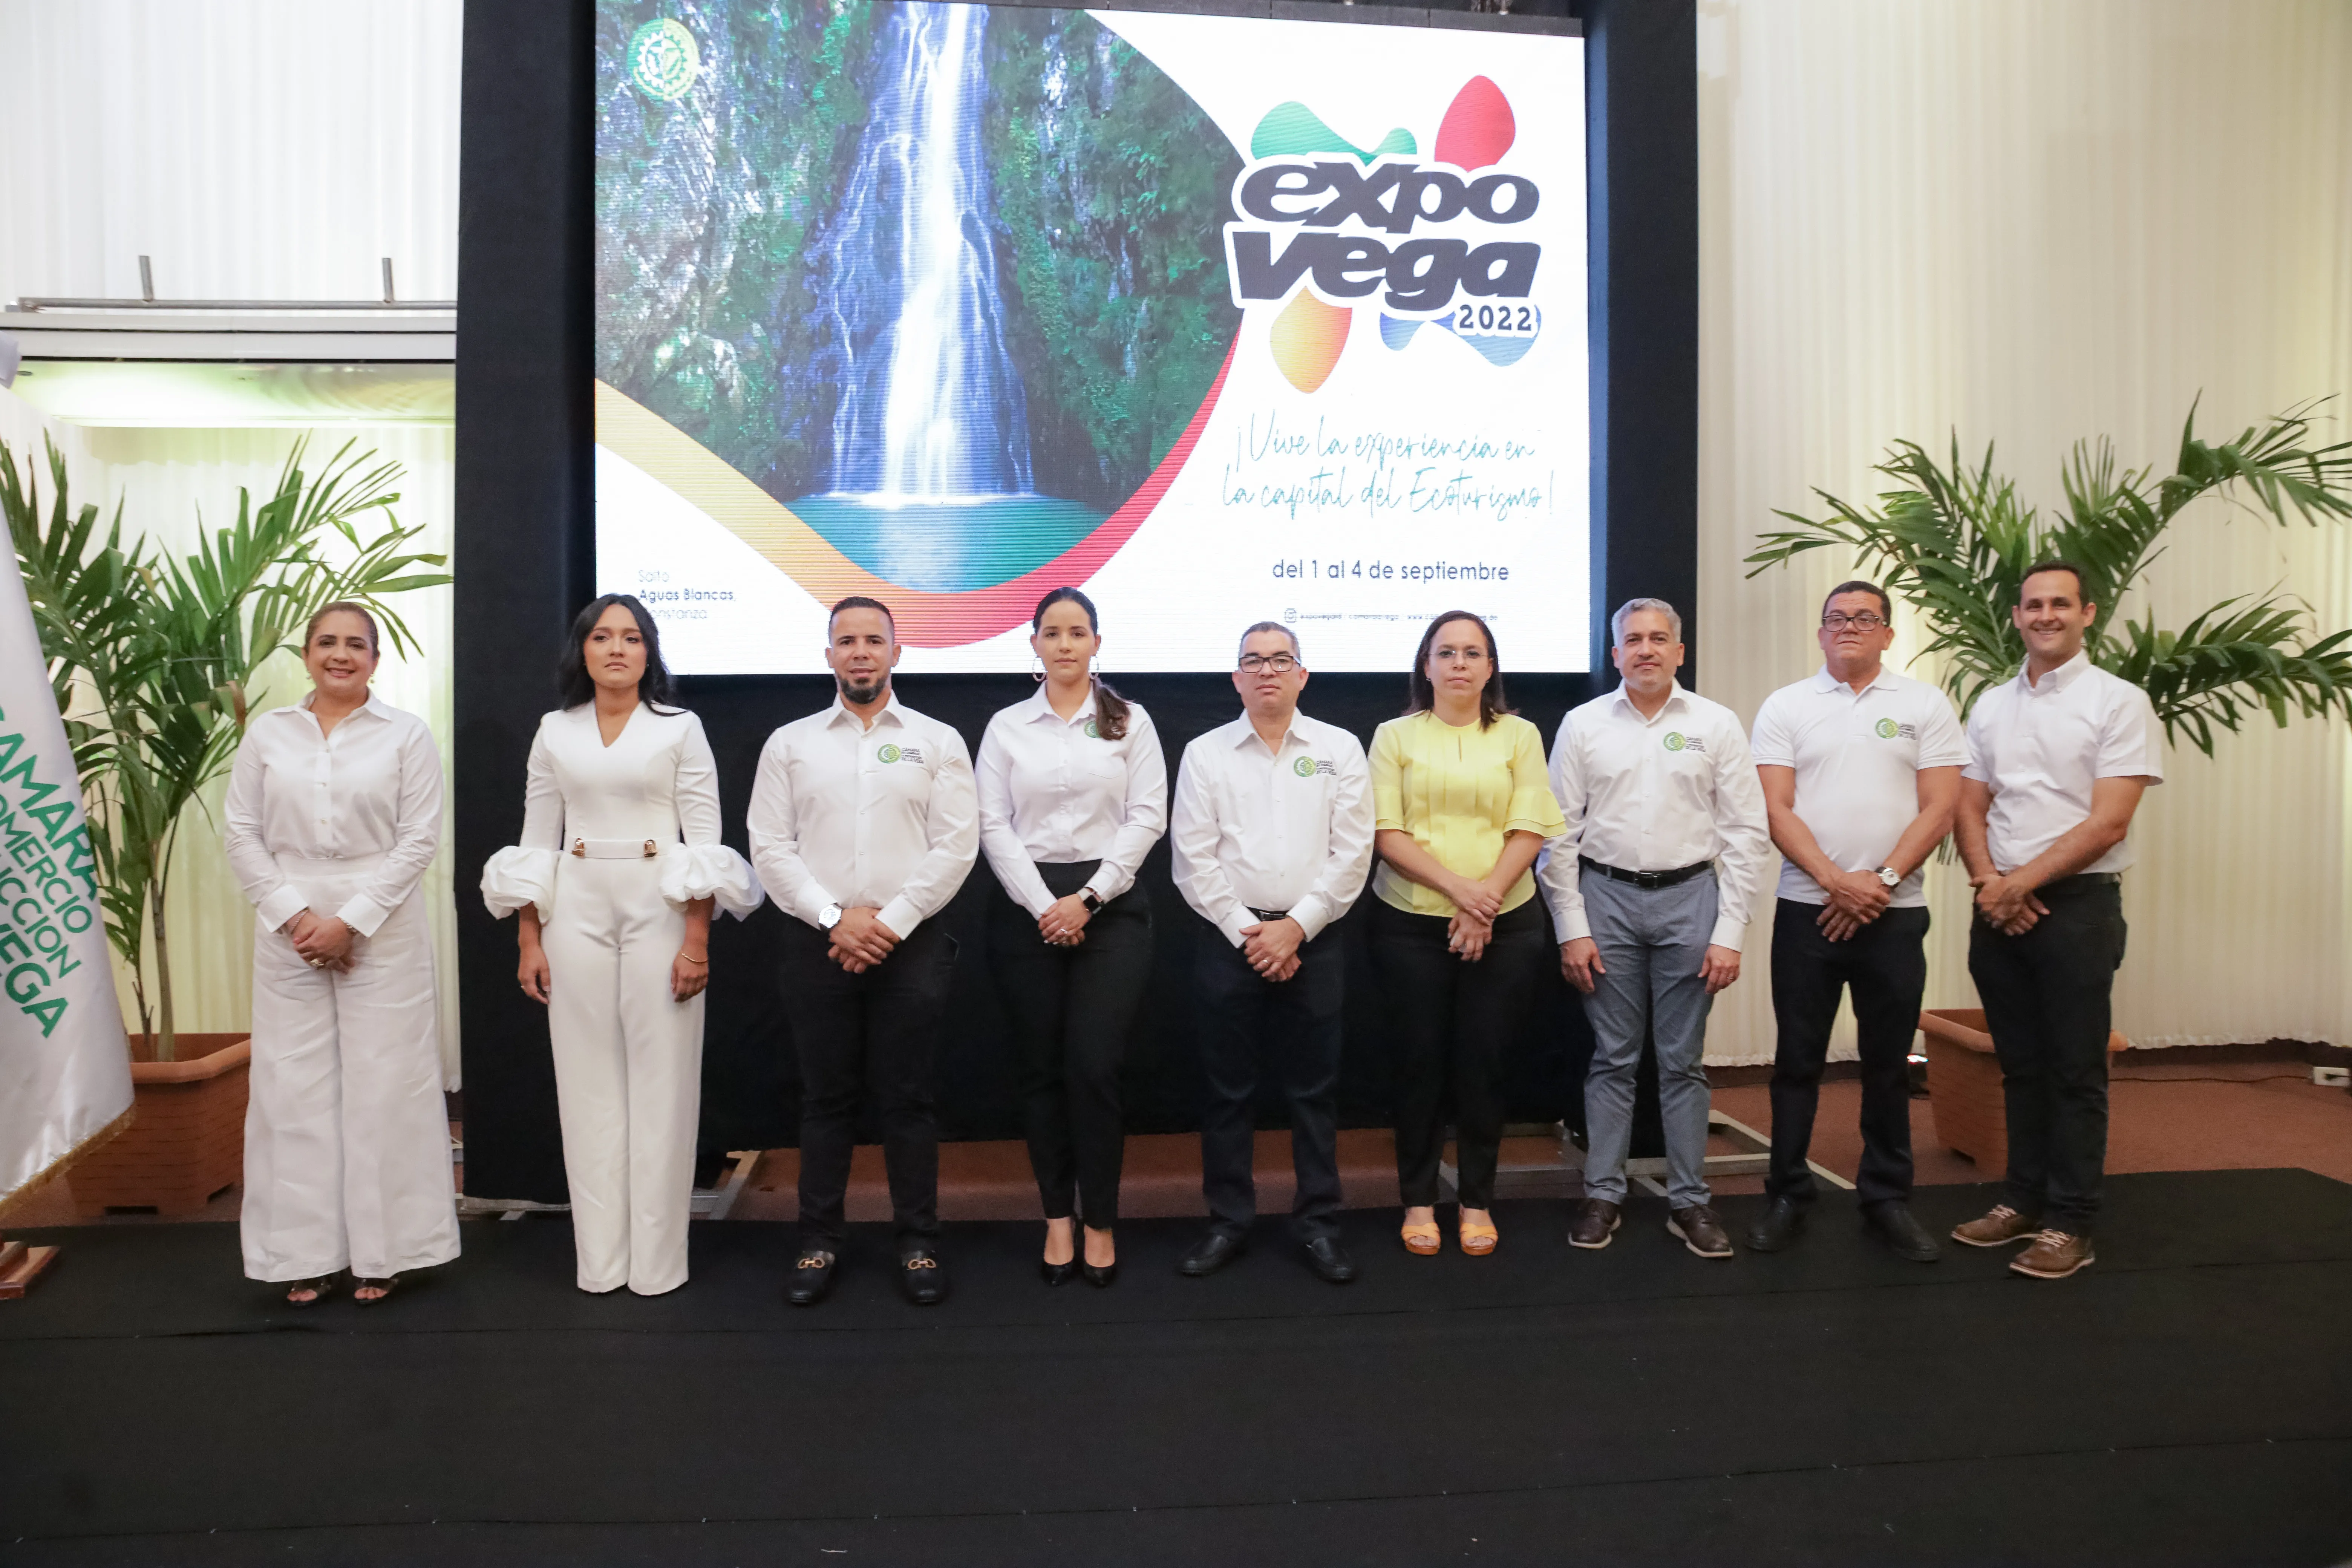 Celebrarán Expo Vega Real 2022 dedicada al turismo provincial